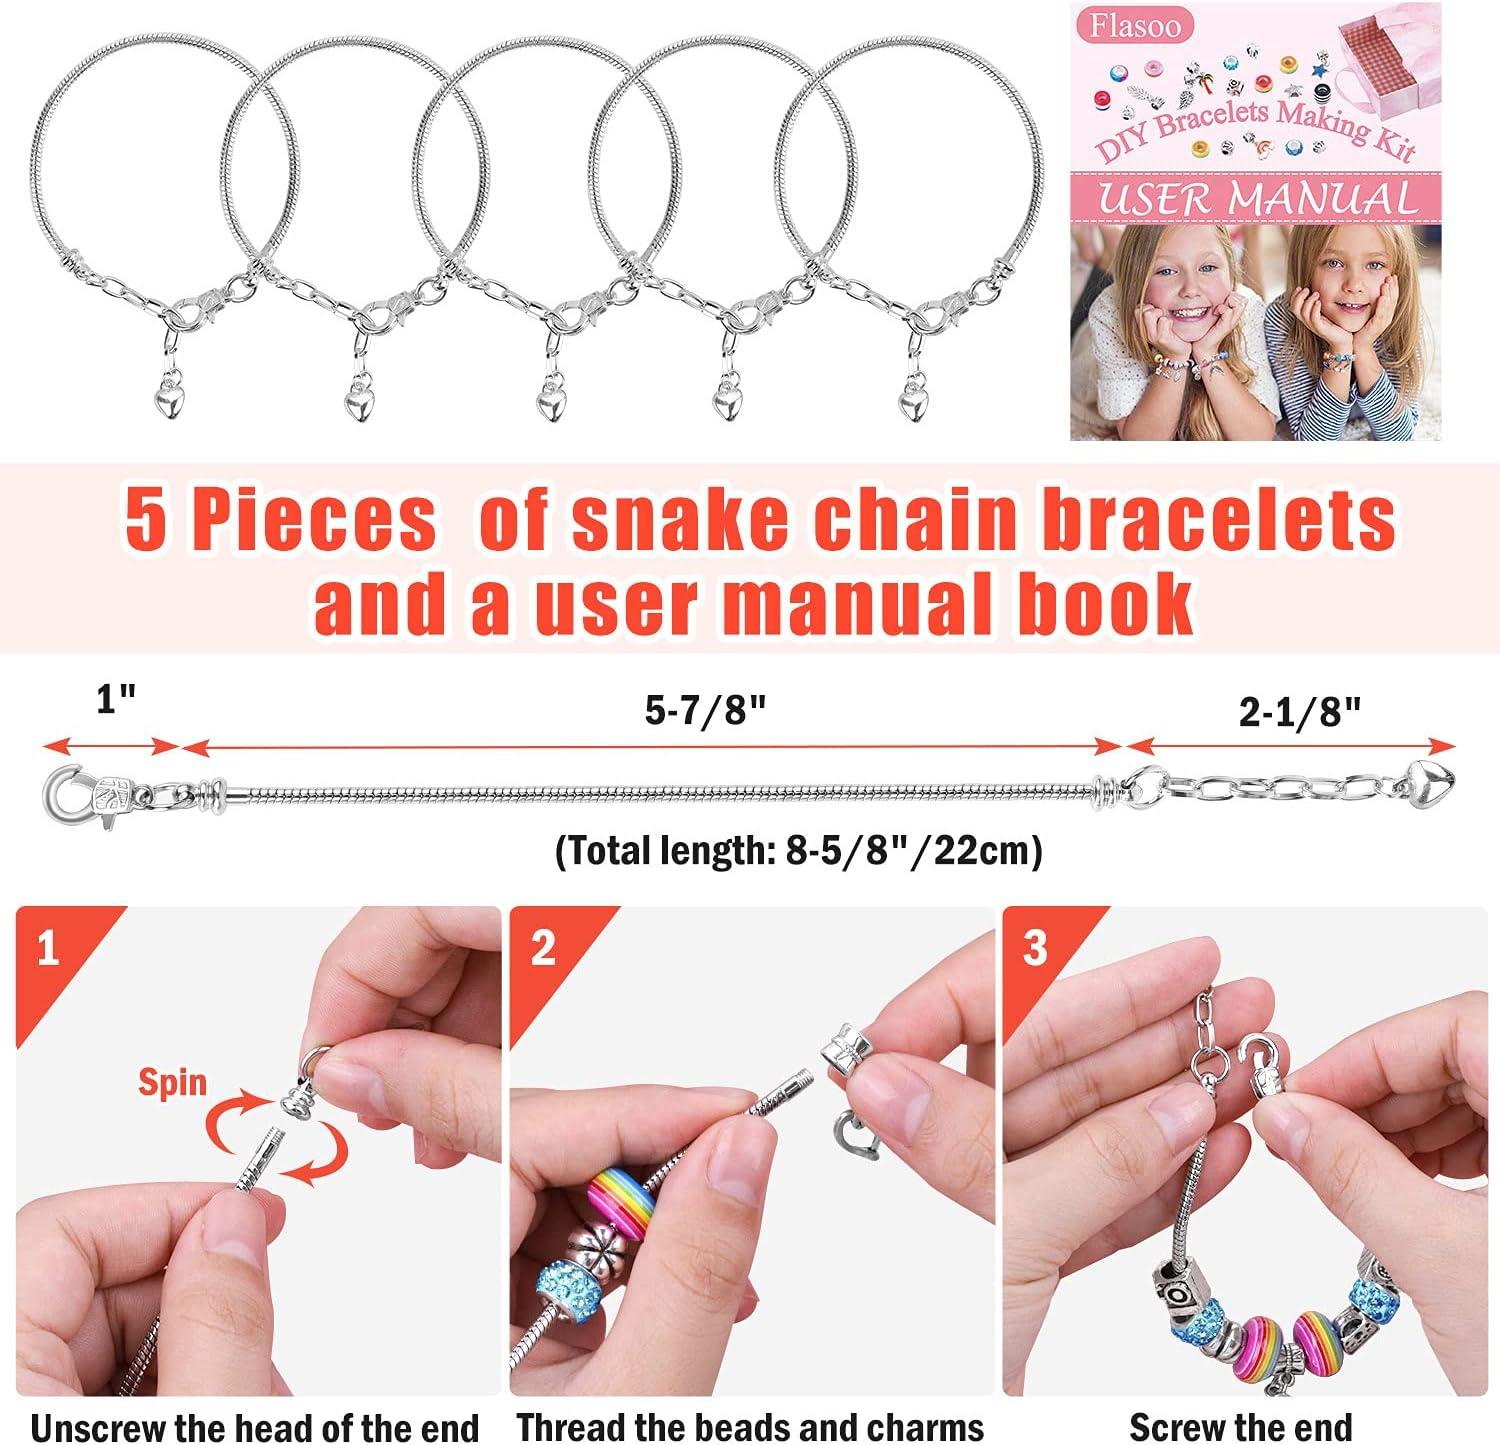 Charm Bracelet Making Kit, 66 Pcs Charm Bracelet Making Kit Jewelry Making  Supplies, Gift Boxed Charm Bracelet Girl DIY Craft Gift Kit For Teen Girls